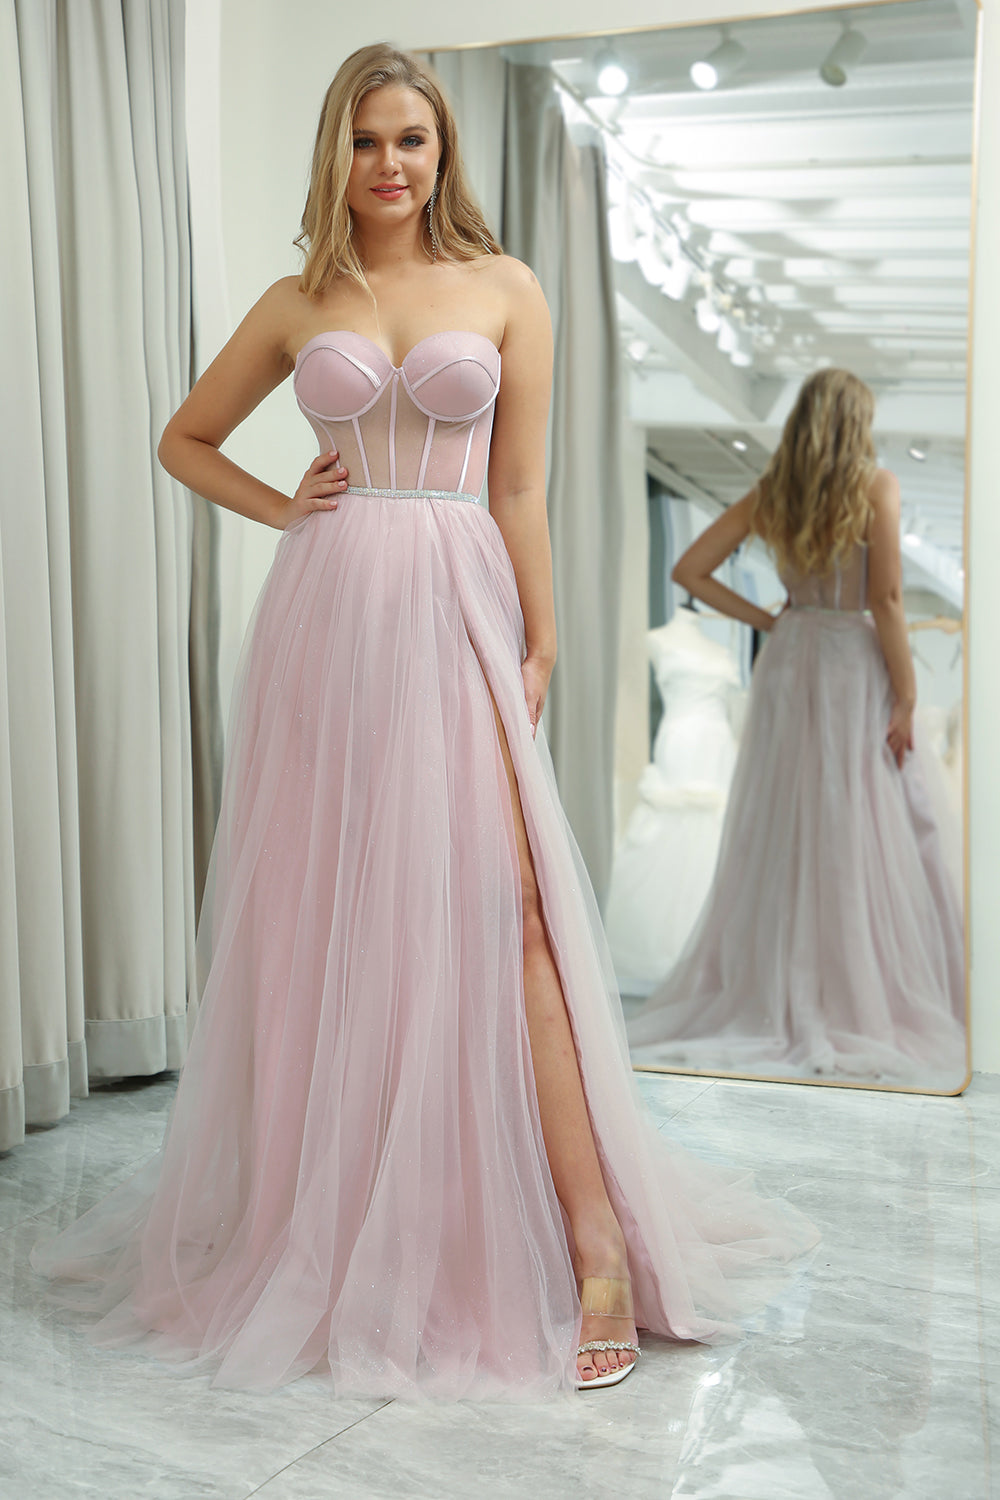 Tylle Sweetheart Light Pink Prom kjole med korsett